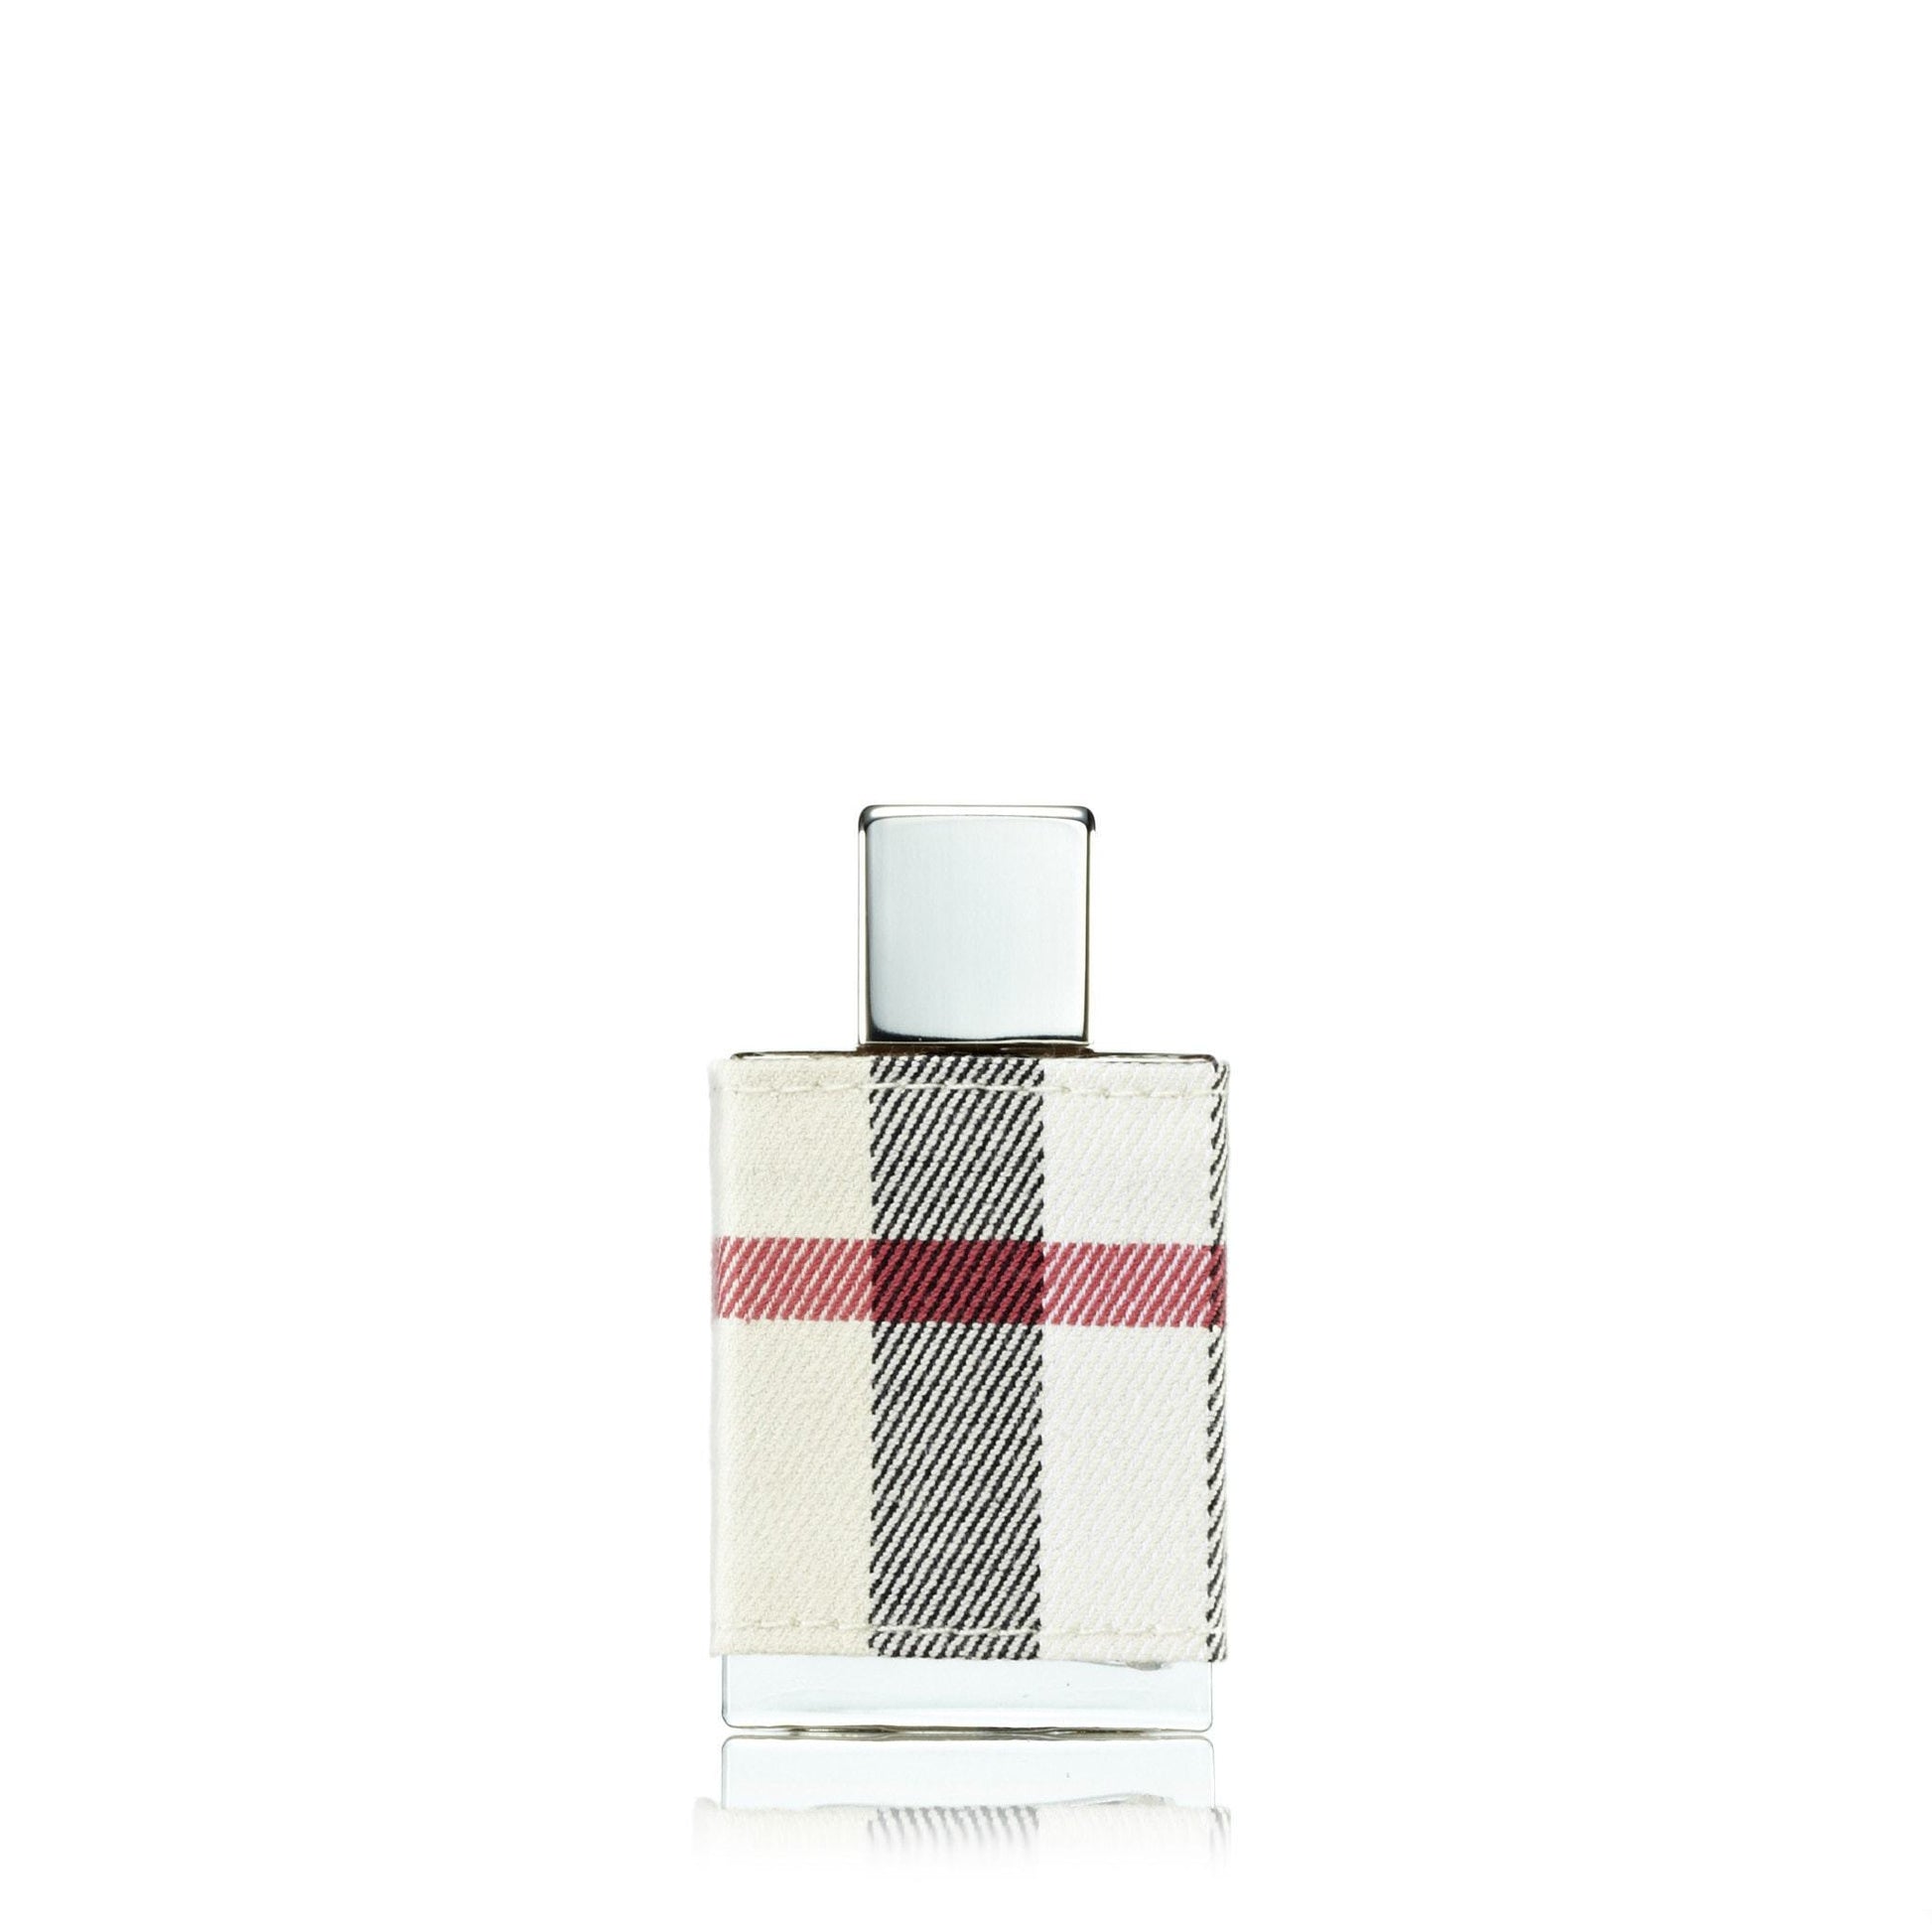 London Eau de Parfum Spray for Women by Burberry, Product image 4